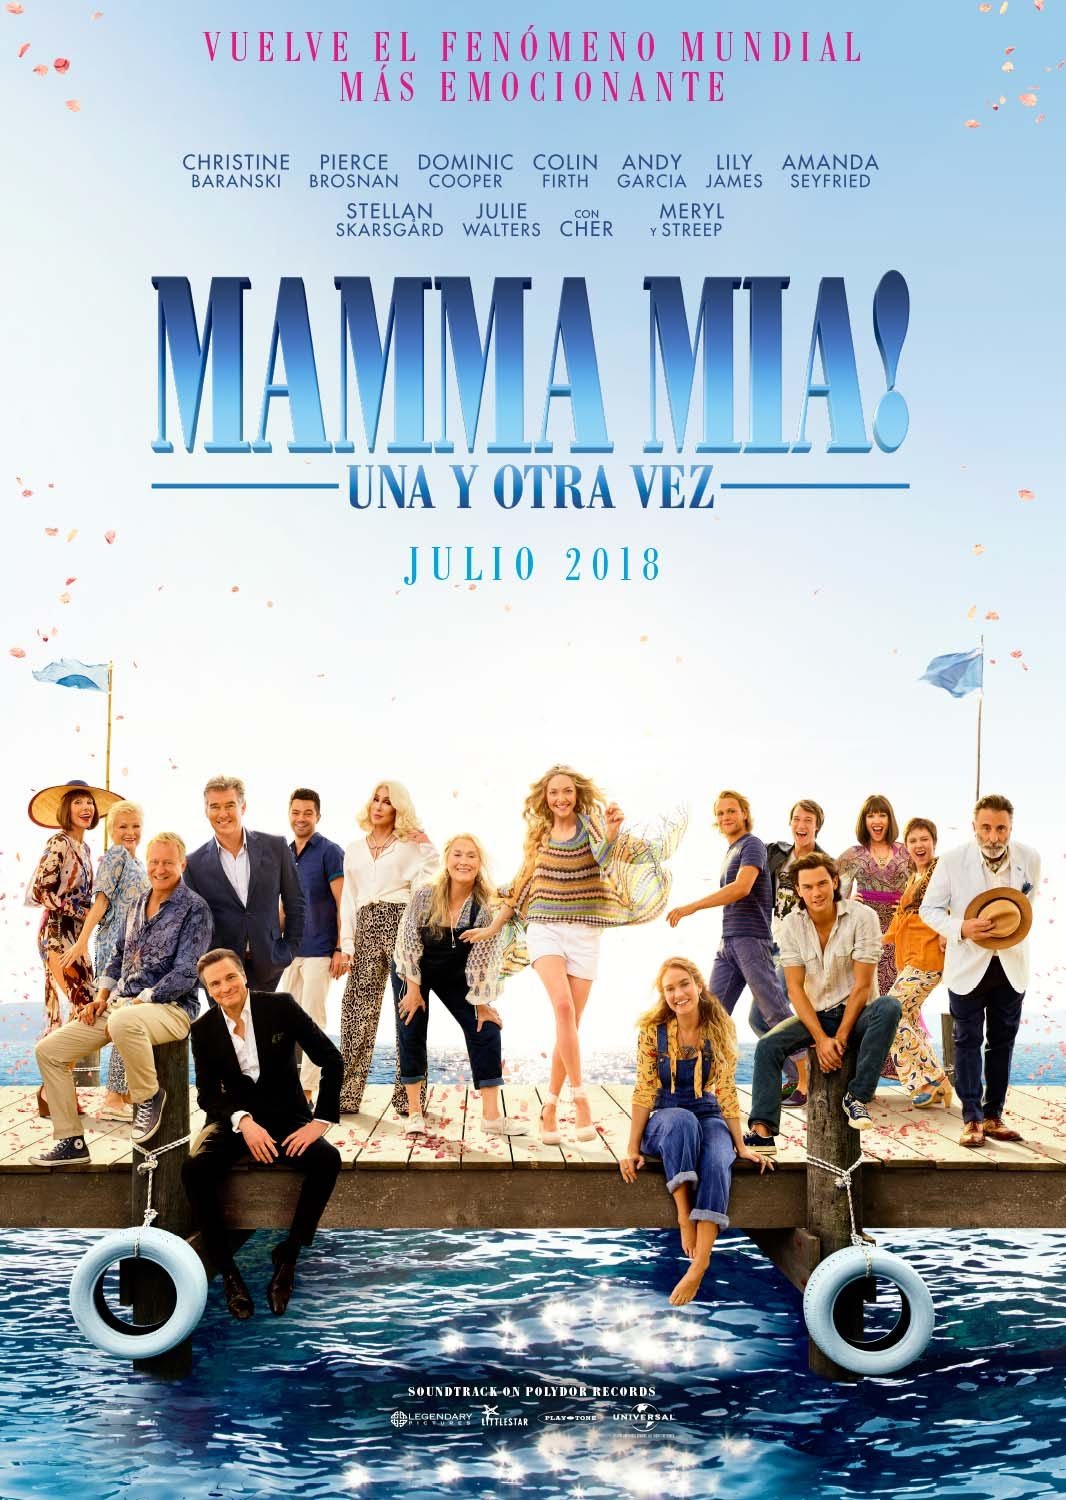 Mamma Mia! Una y otra vez - La Crítica de